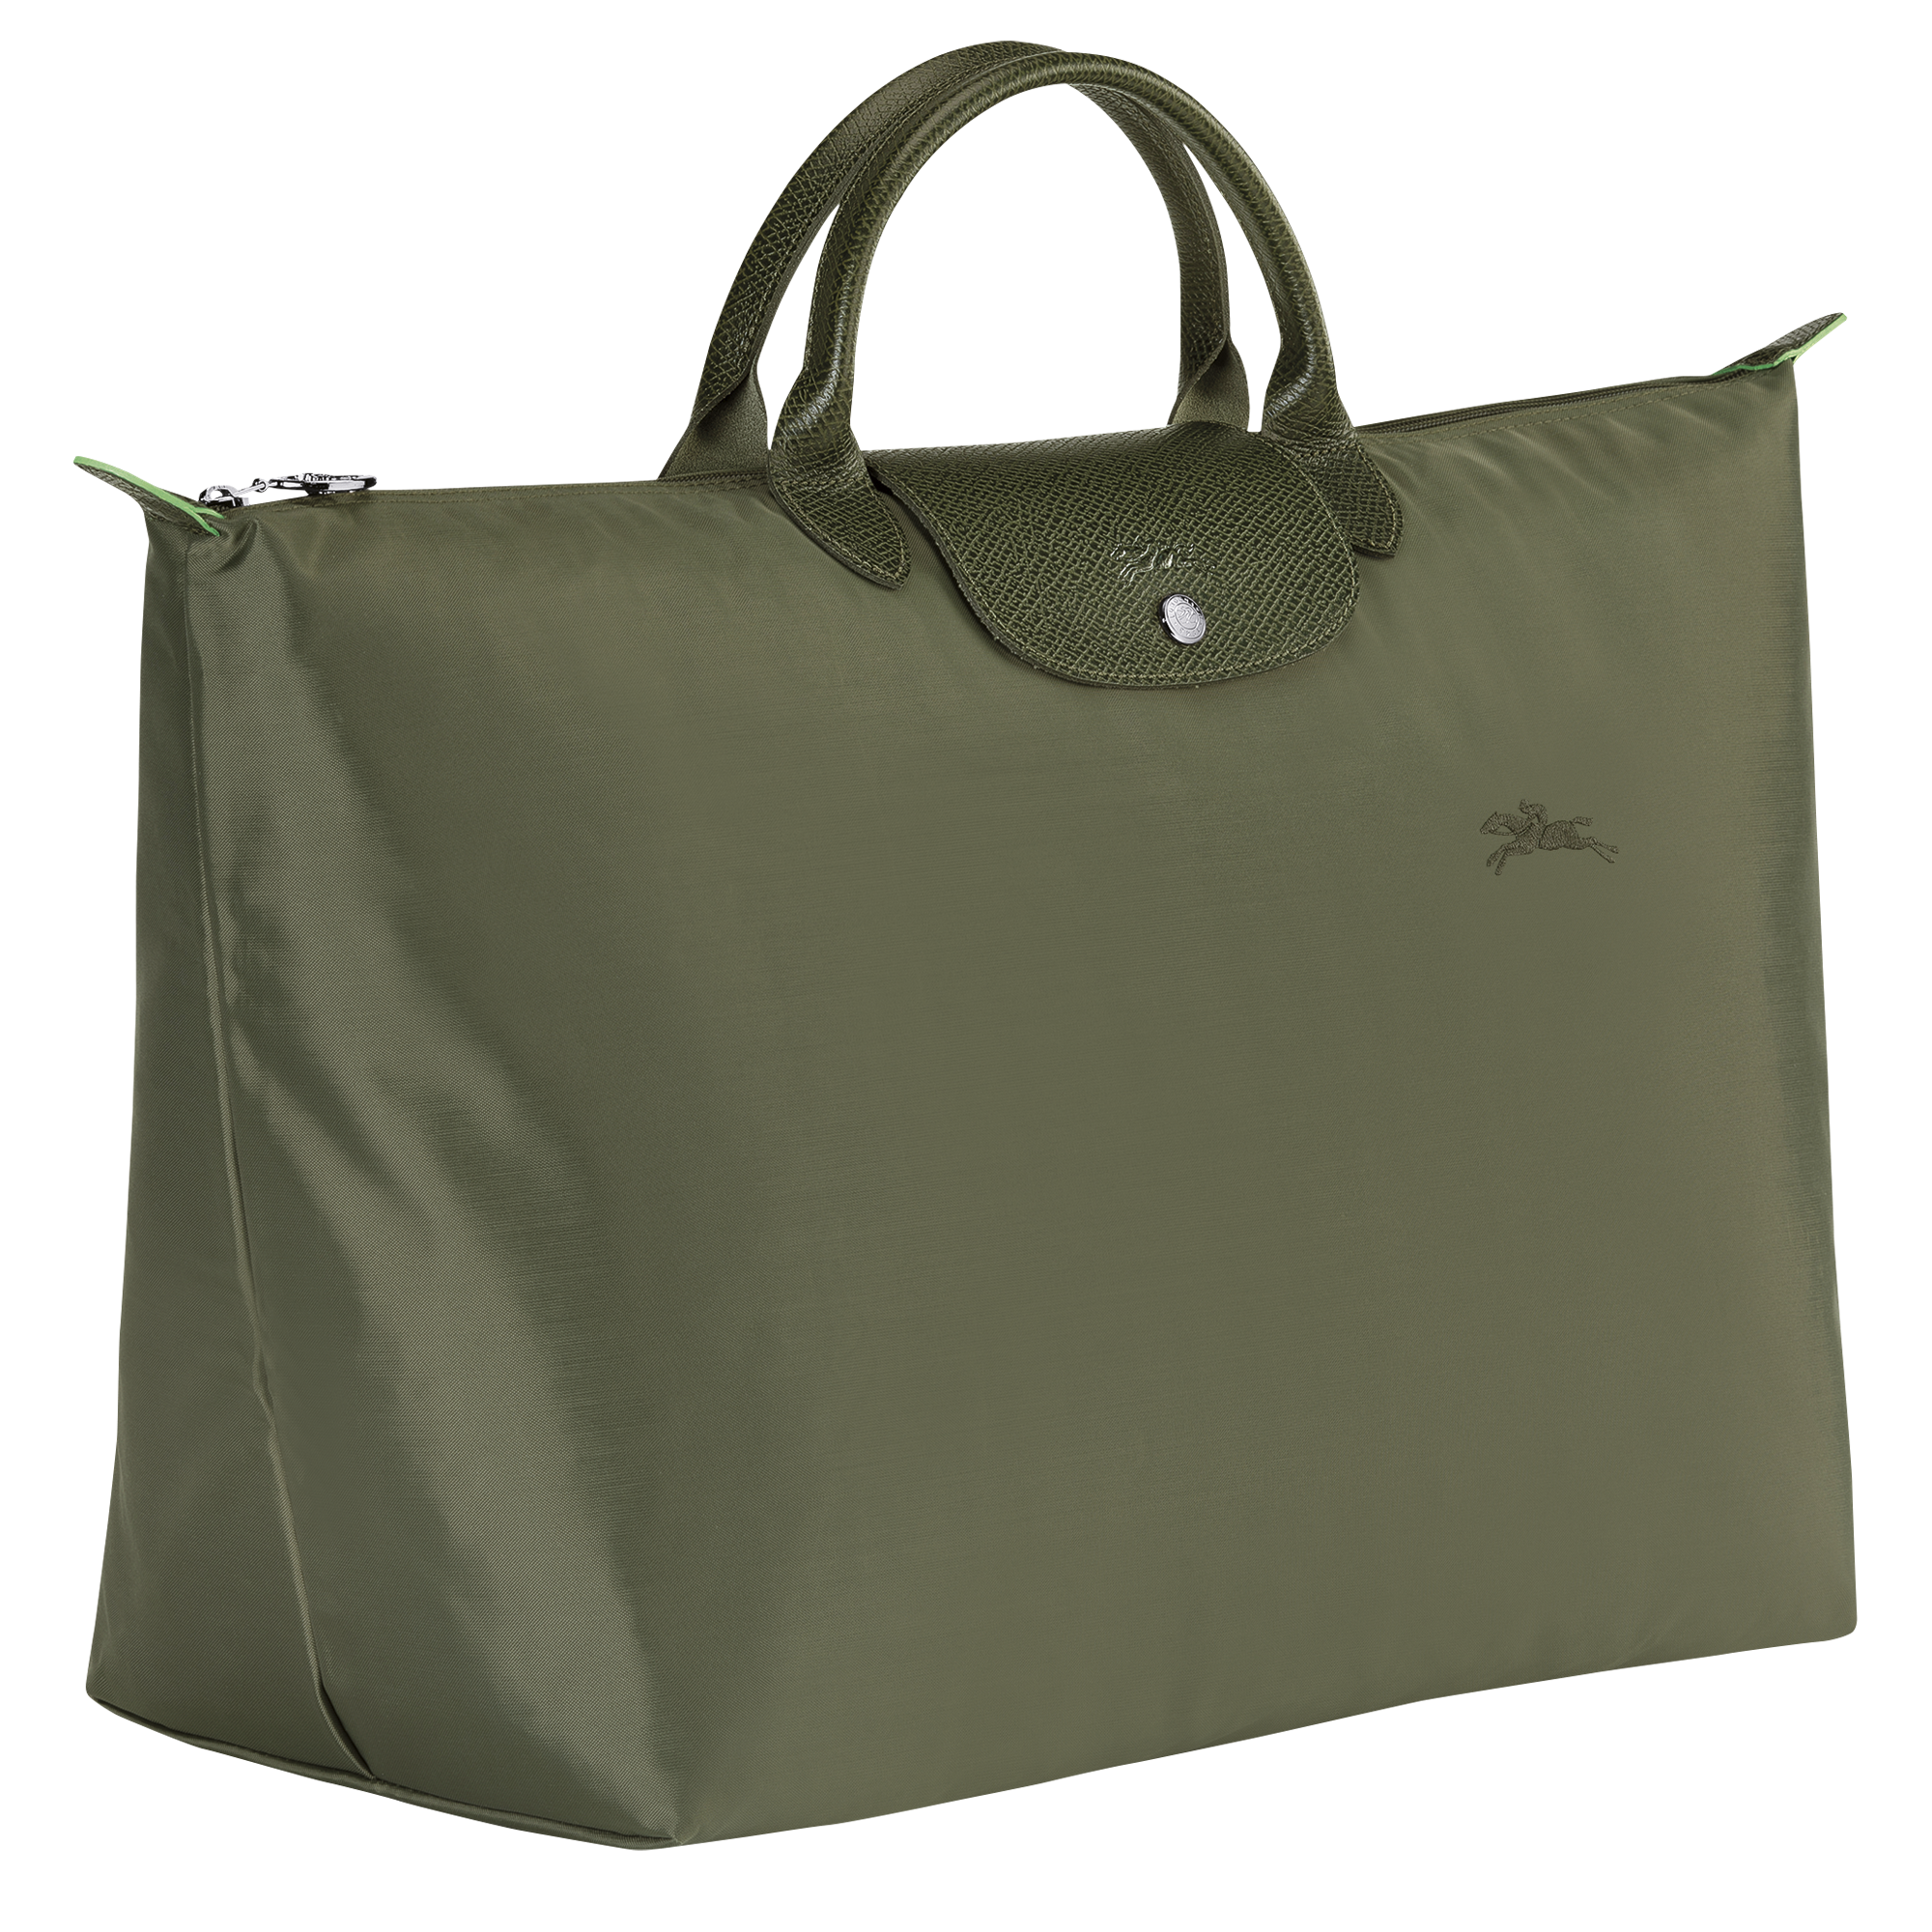 Longchamp Le Pliage Green Travel Bag - Farfetch